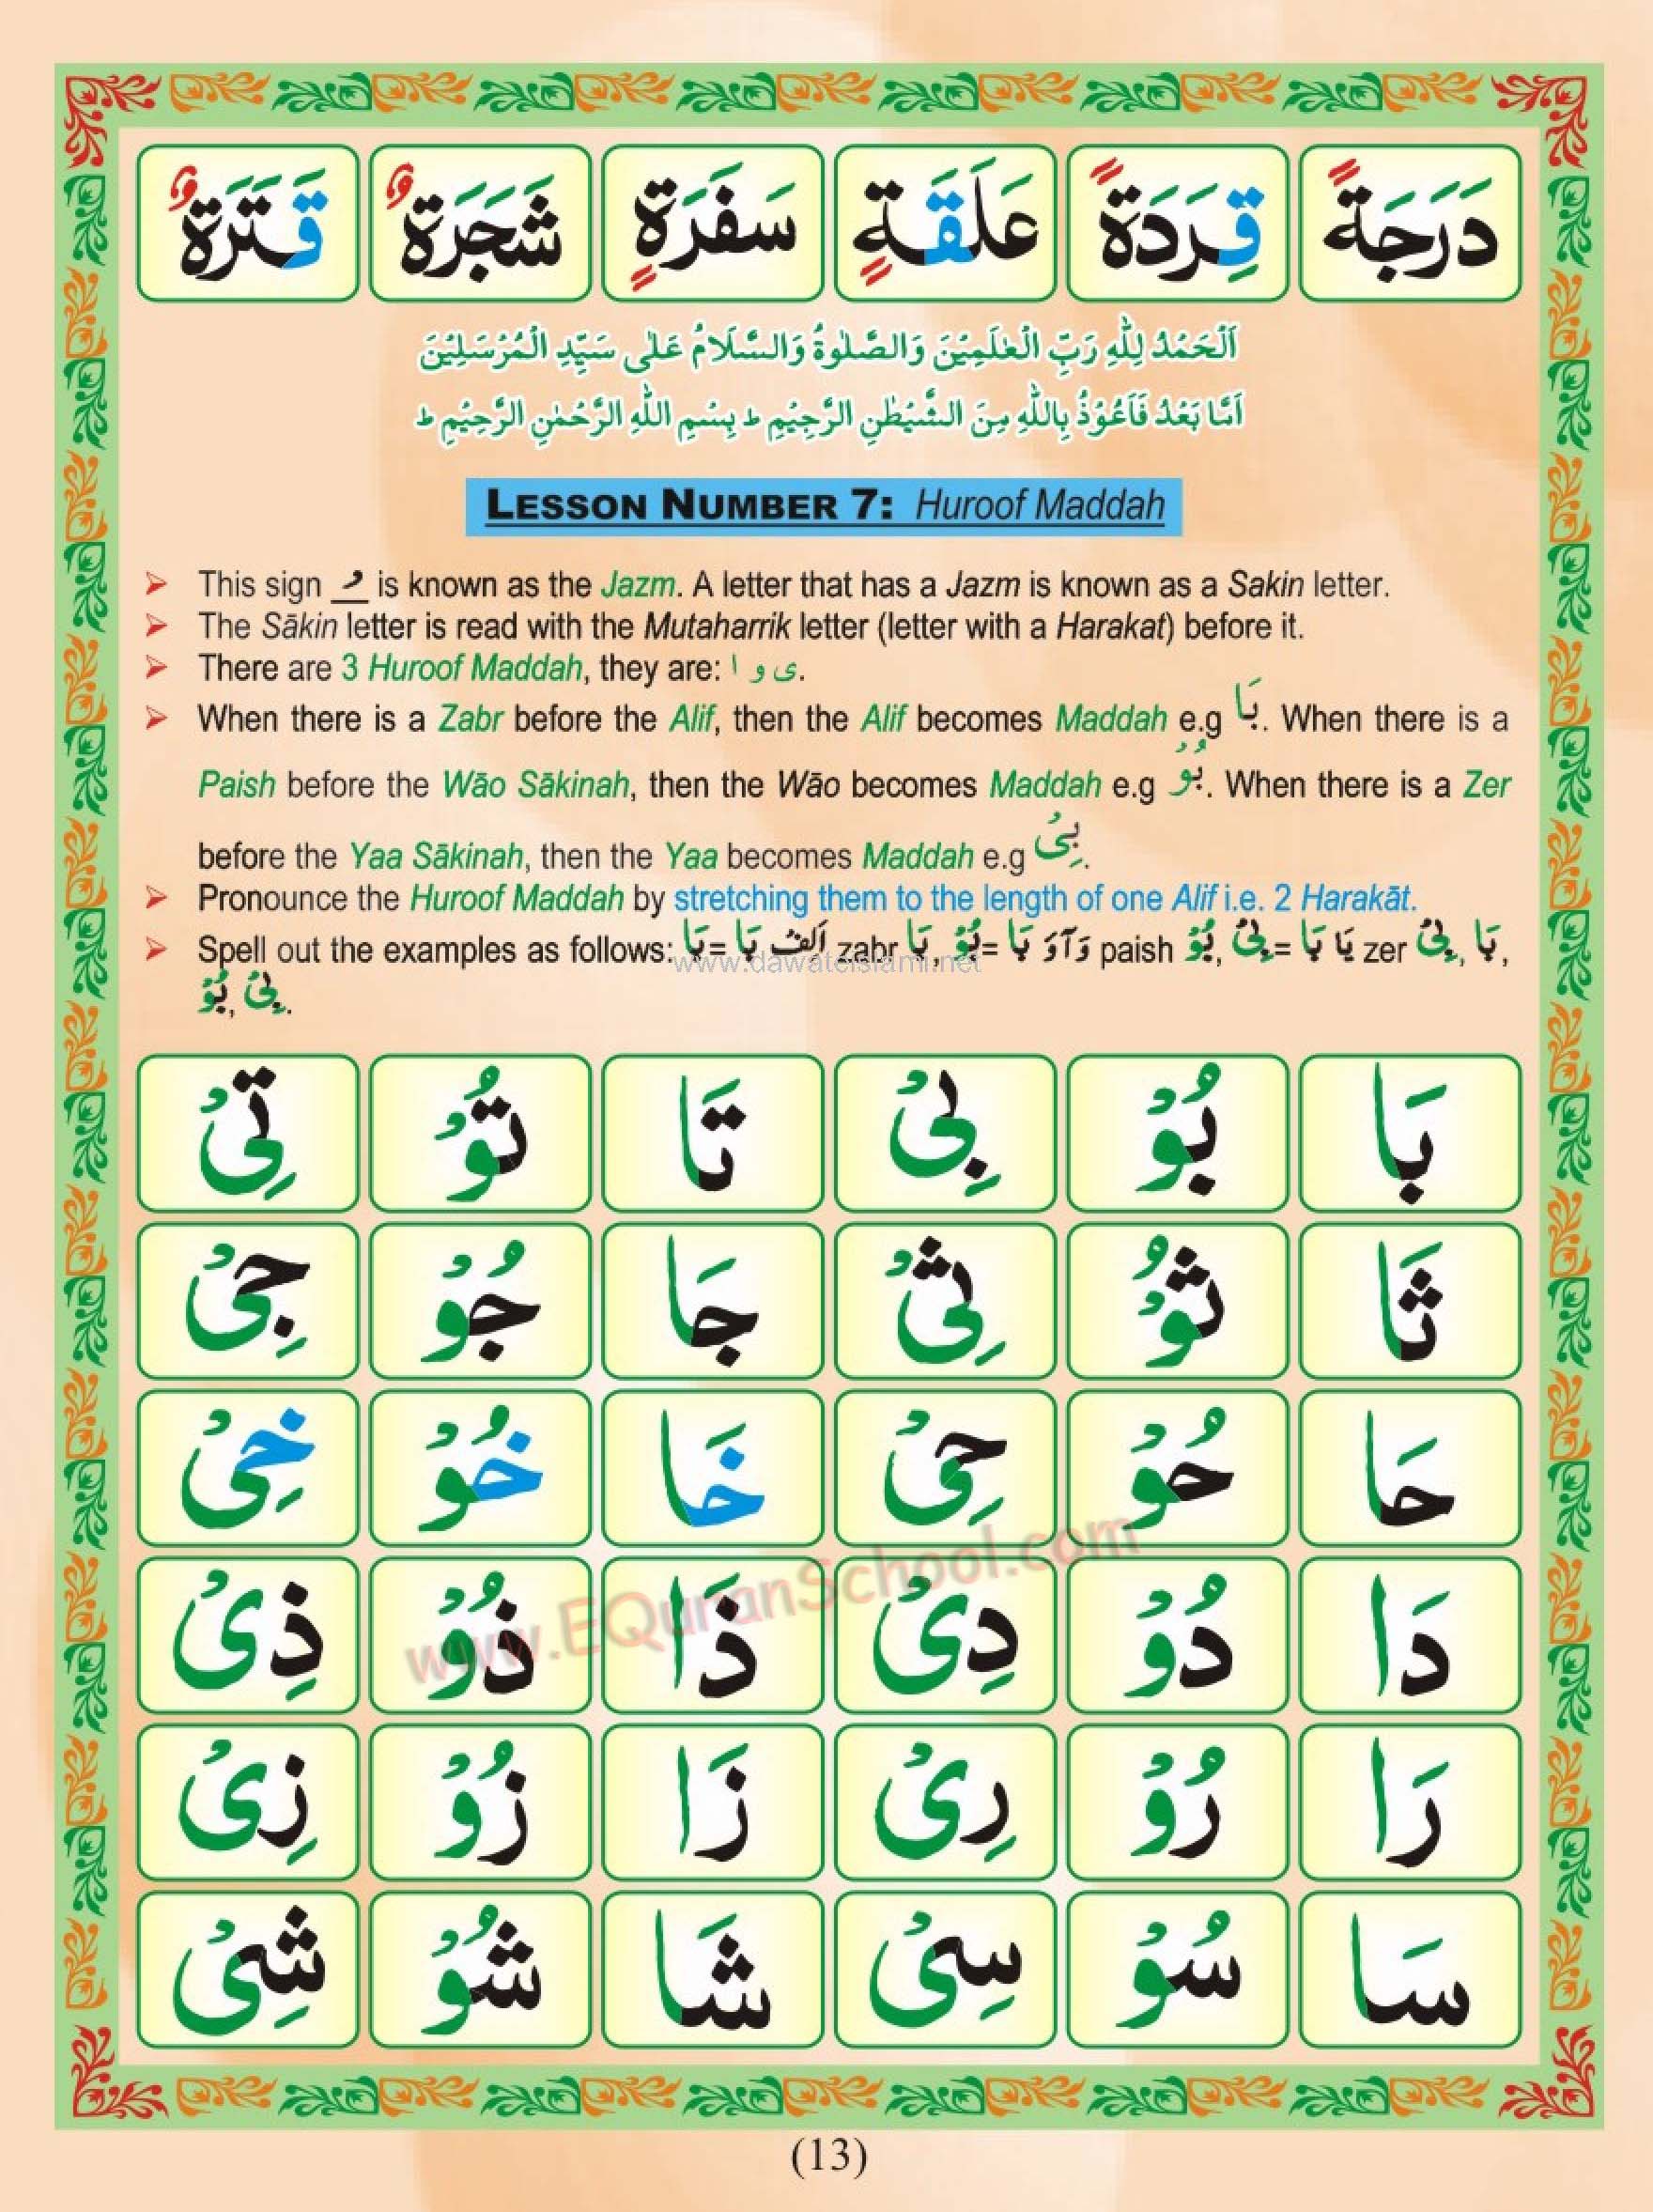 Madani Qaida Page 13: Lesson No 08, Maddah Letters, Huroof e maddah, Alif Maddah, Wao Maddah, Yaa Maddah